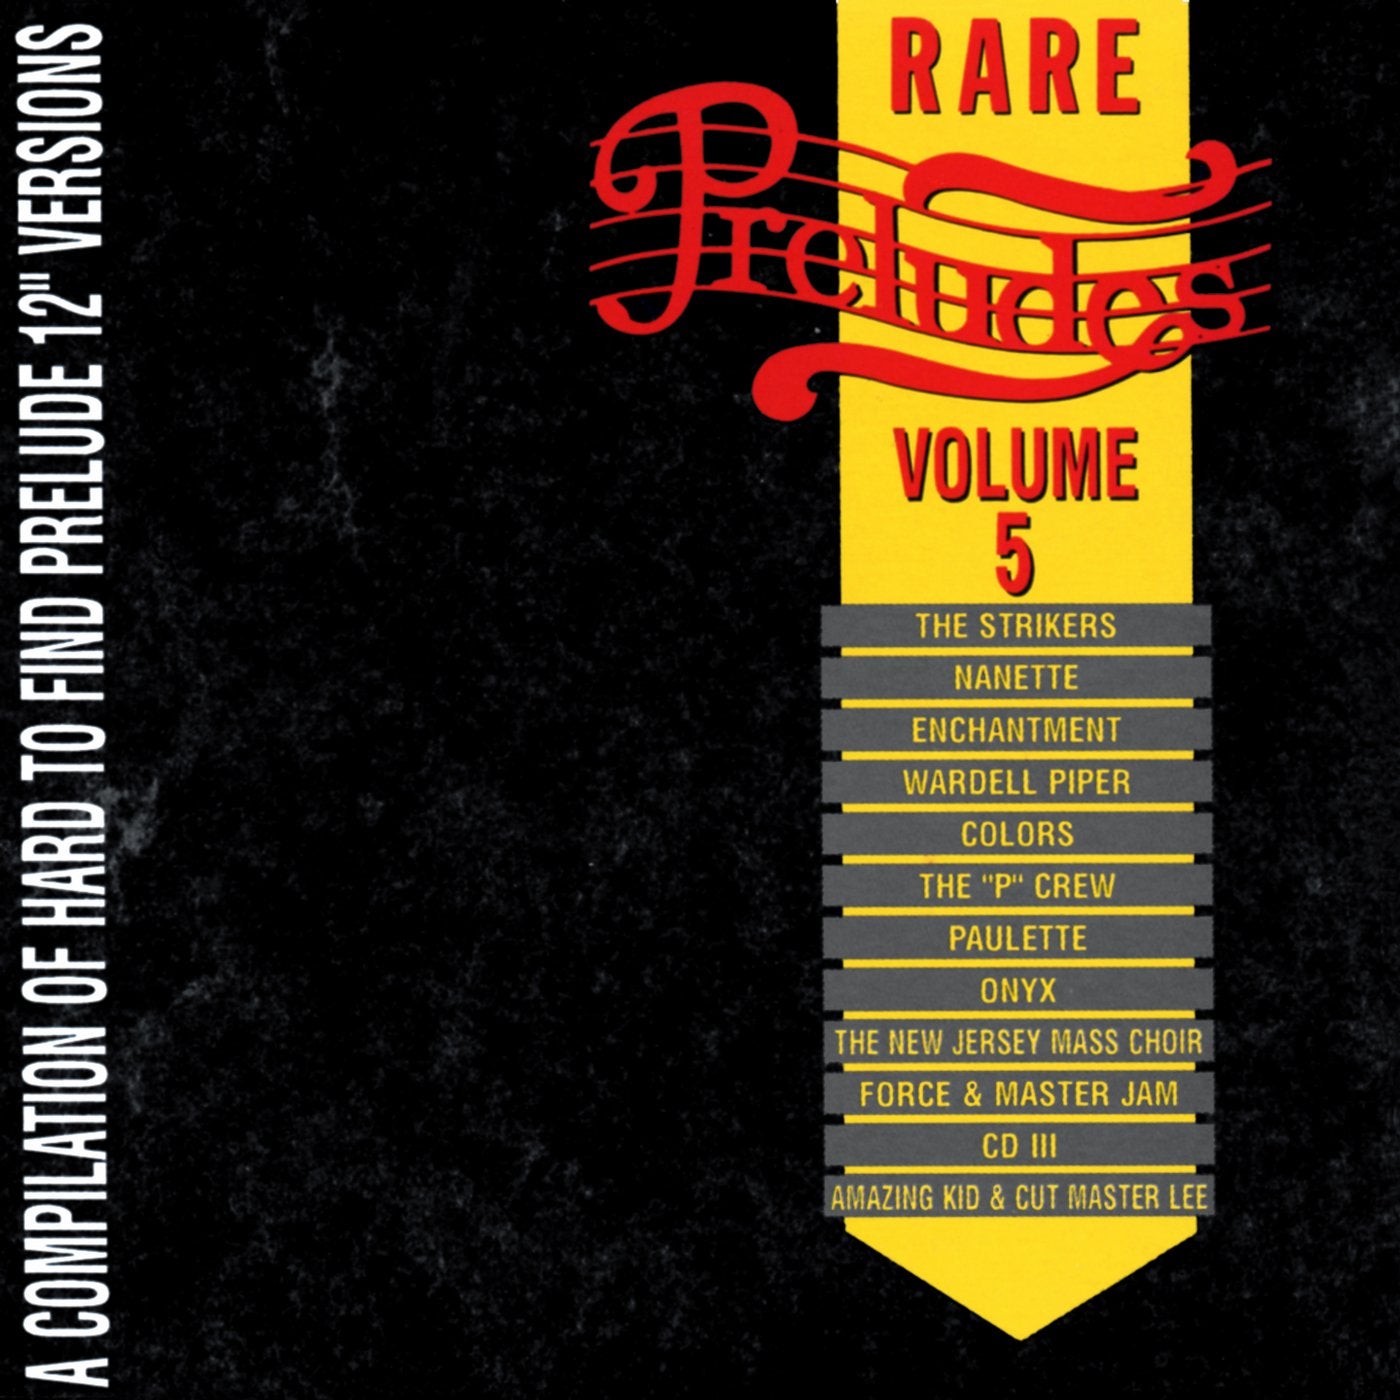 Rare Preludes Vol. 5